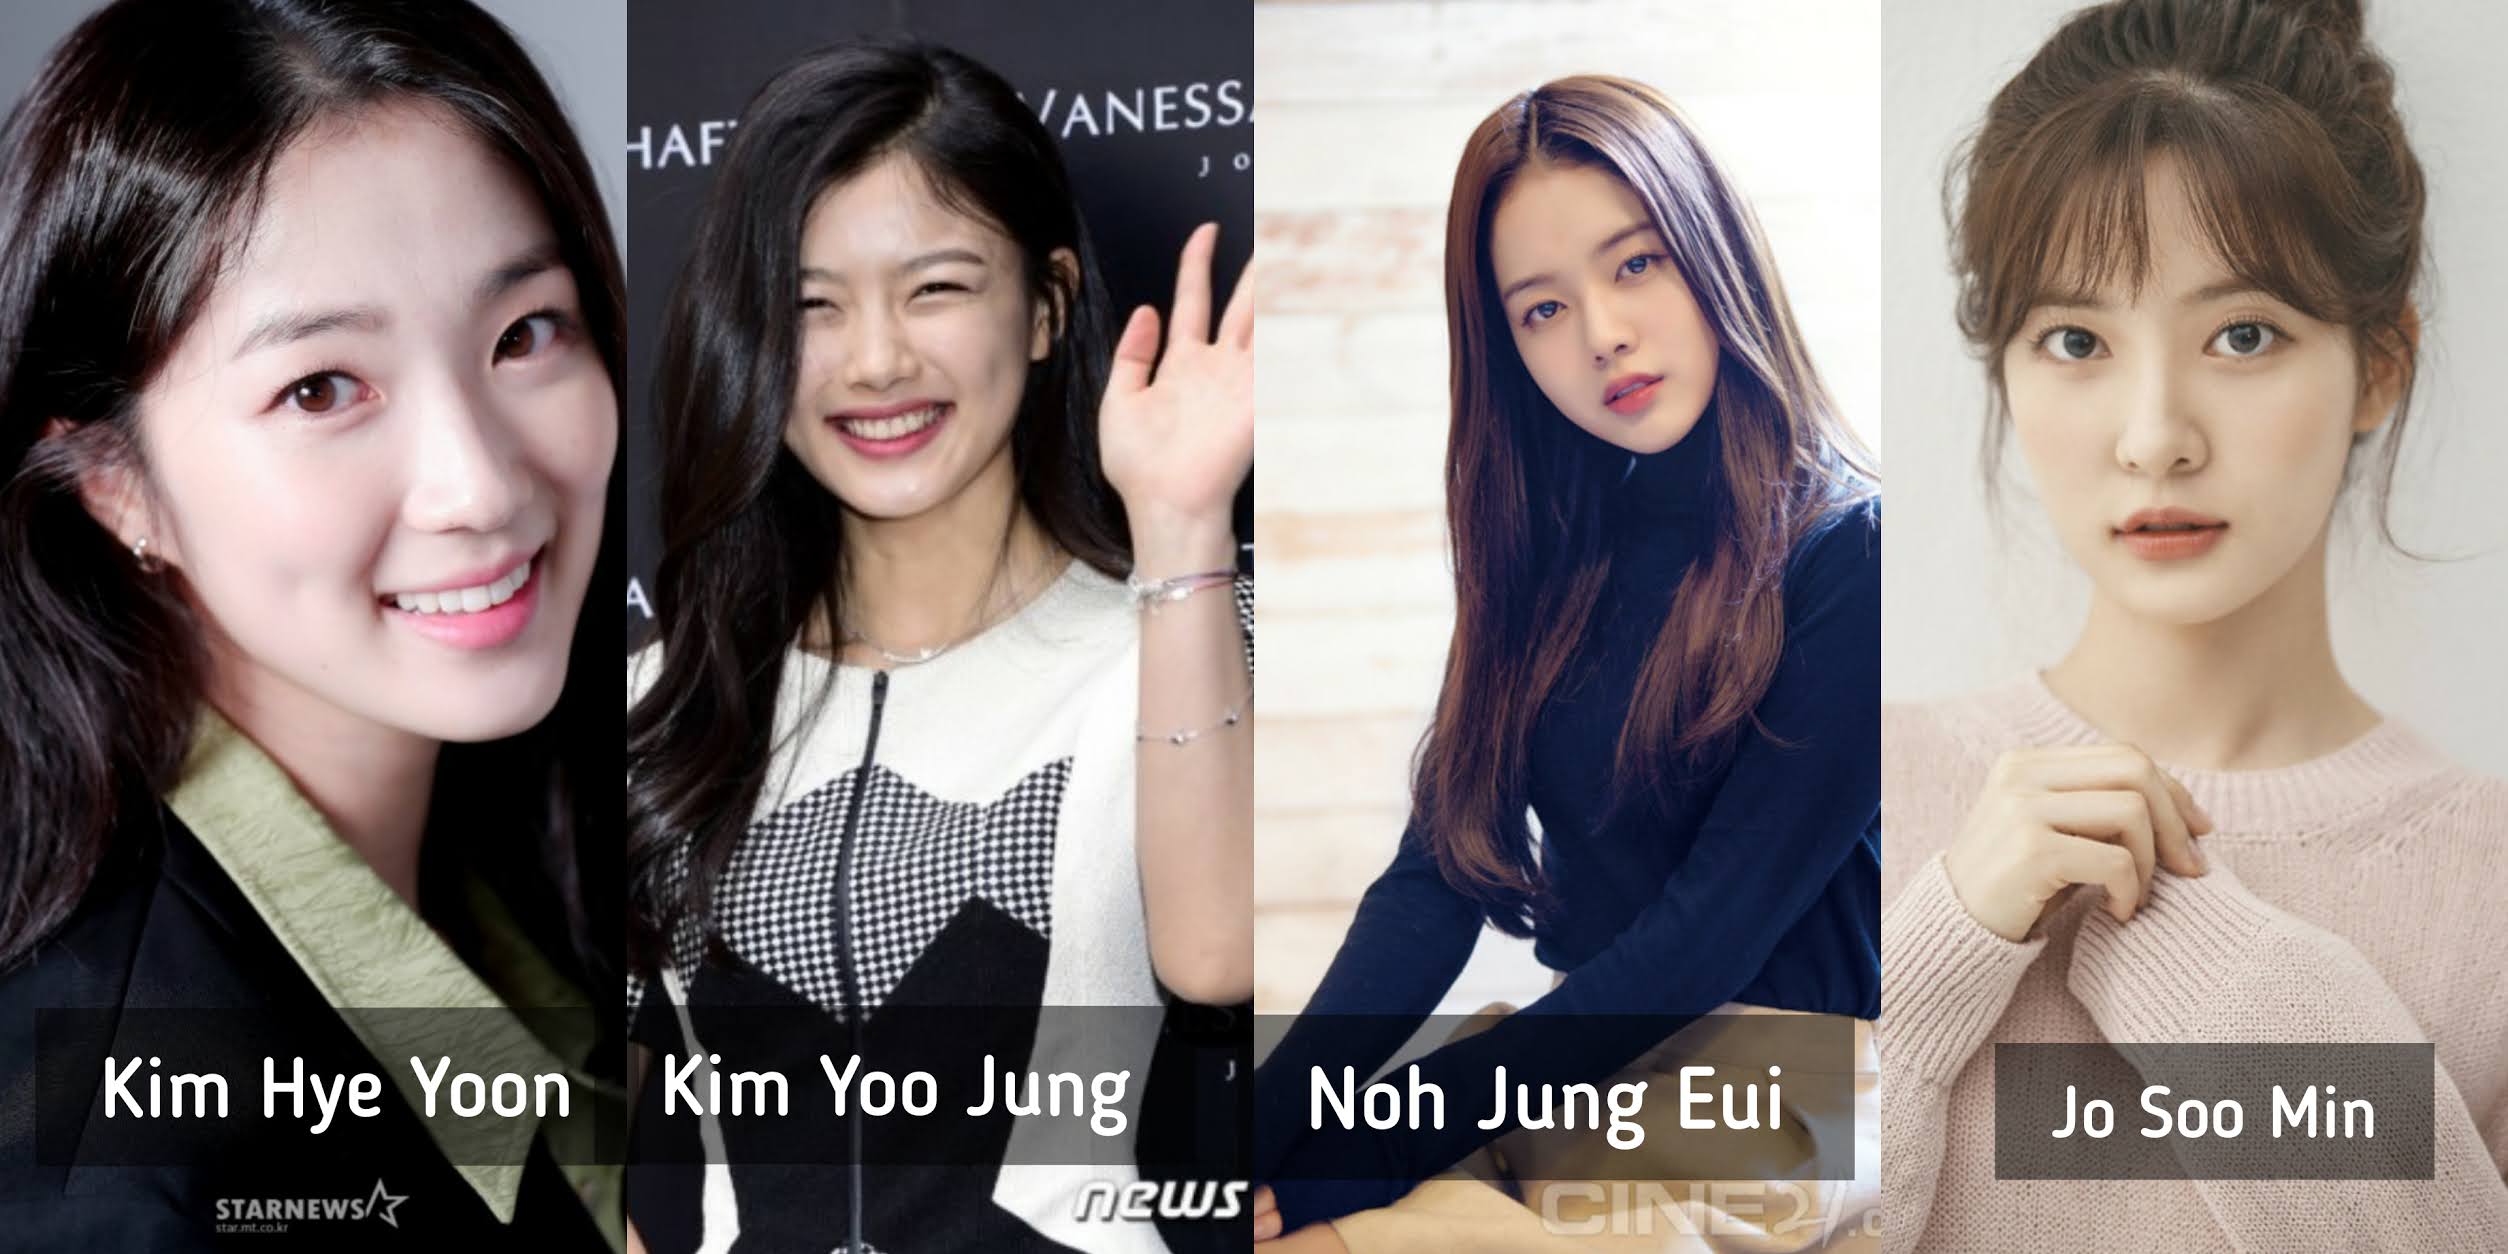 Kim yoo jung surgery